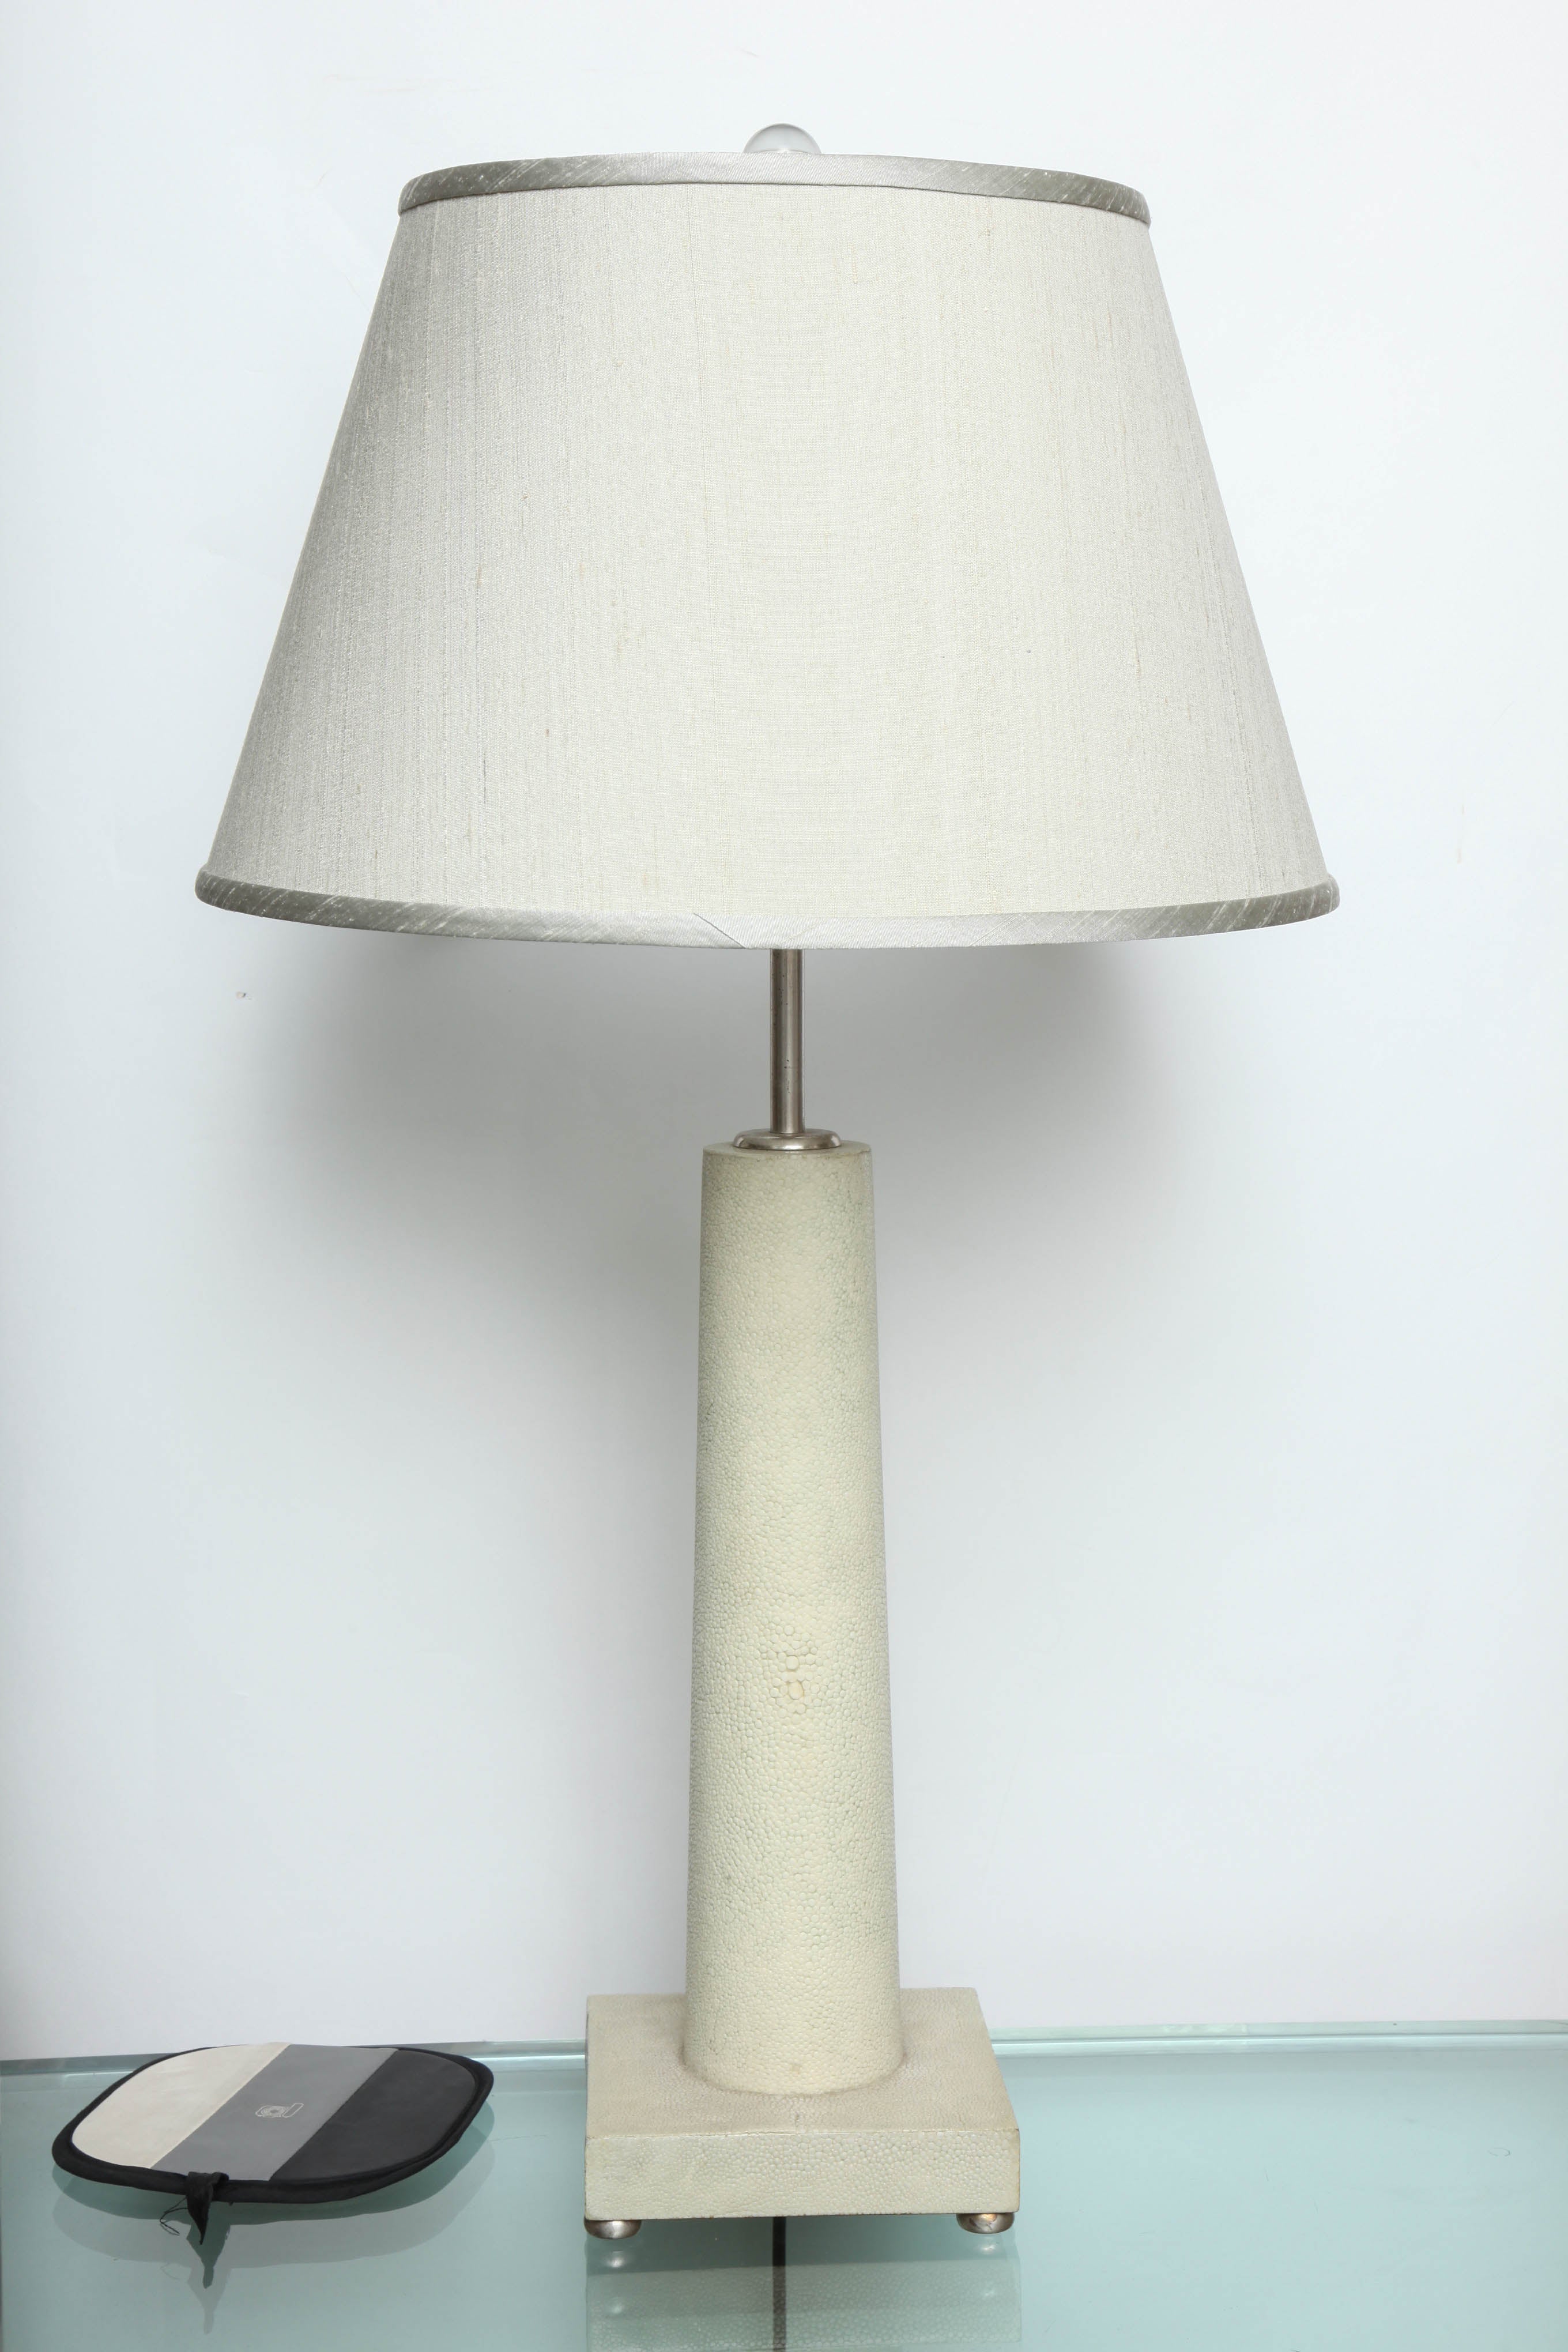 Shagreen 'Jean Michel Frank' Table Lamps